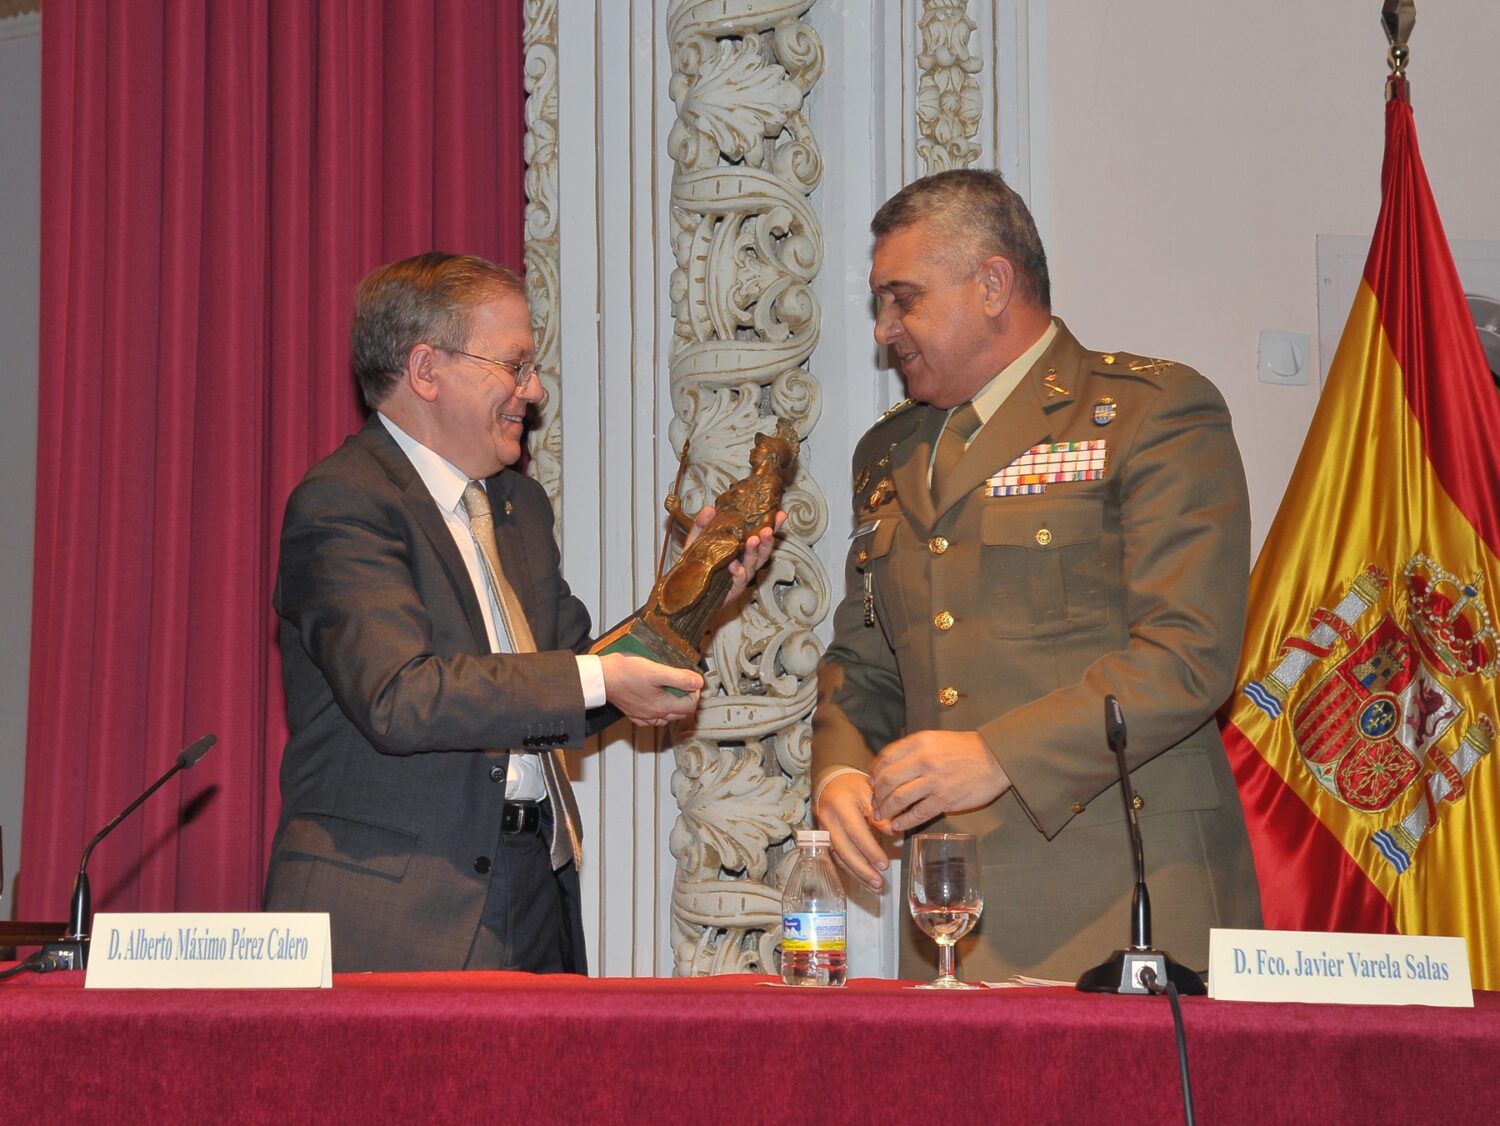 El Teniente General Jefe de la Fuerza Terrestre, D. Francisco Javier Varela Salas, recibió el galardón del Ateneo de manos de D. Alberto Máximo Pérez Calero, Presidente de la institución